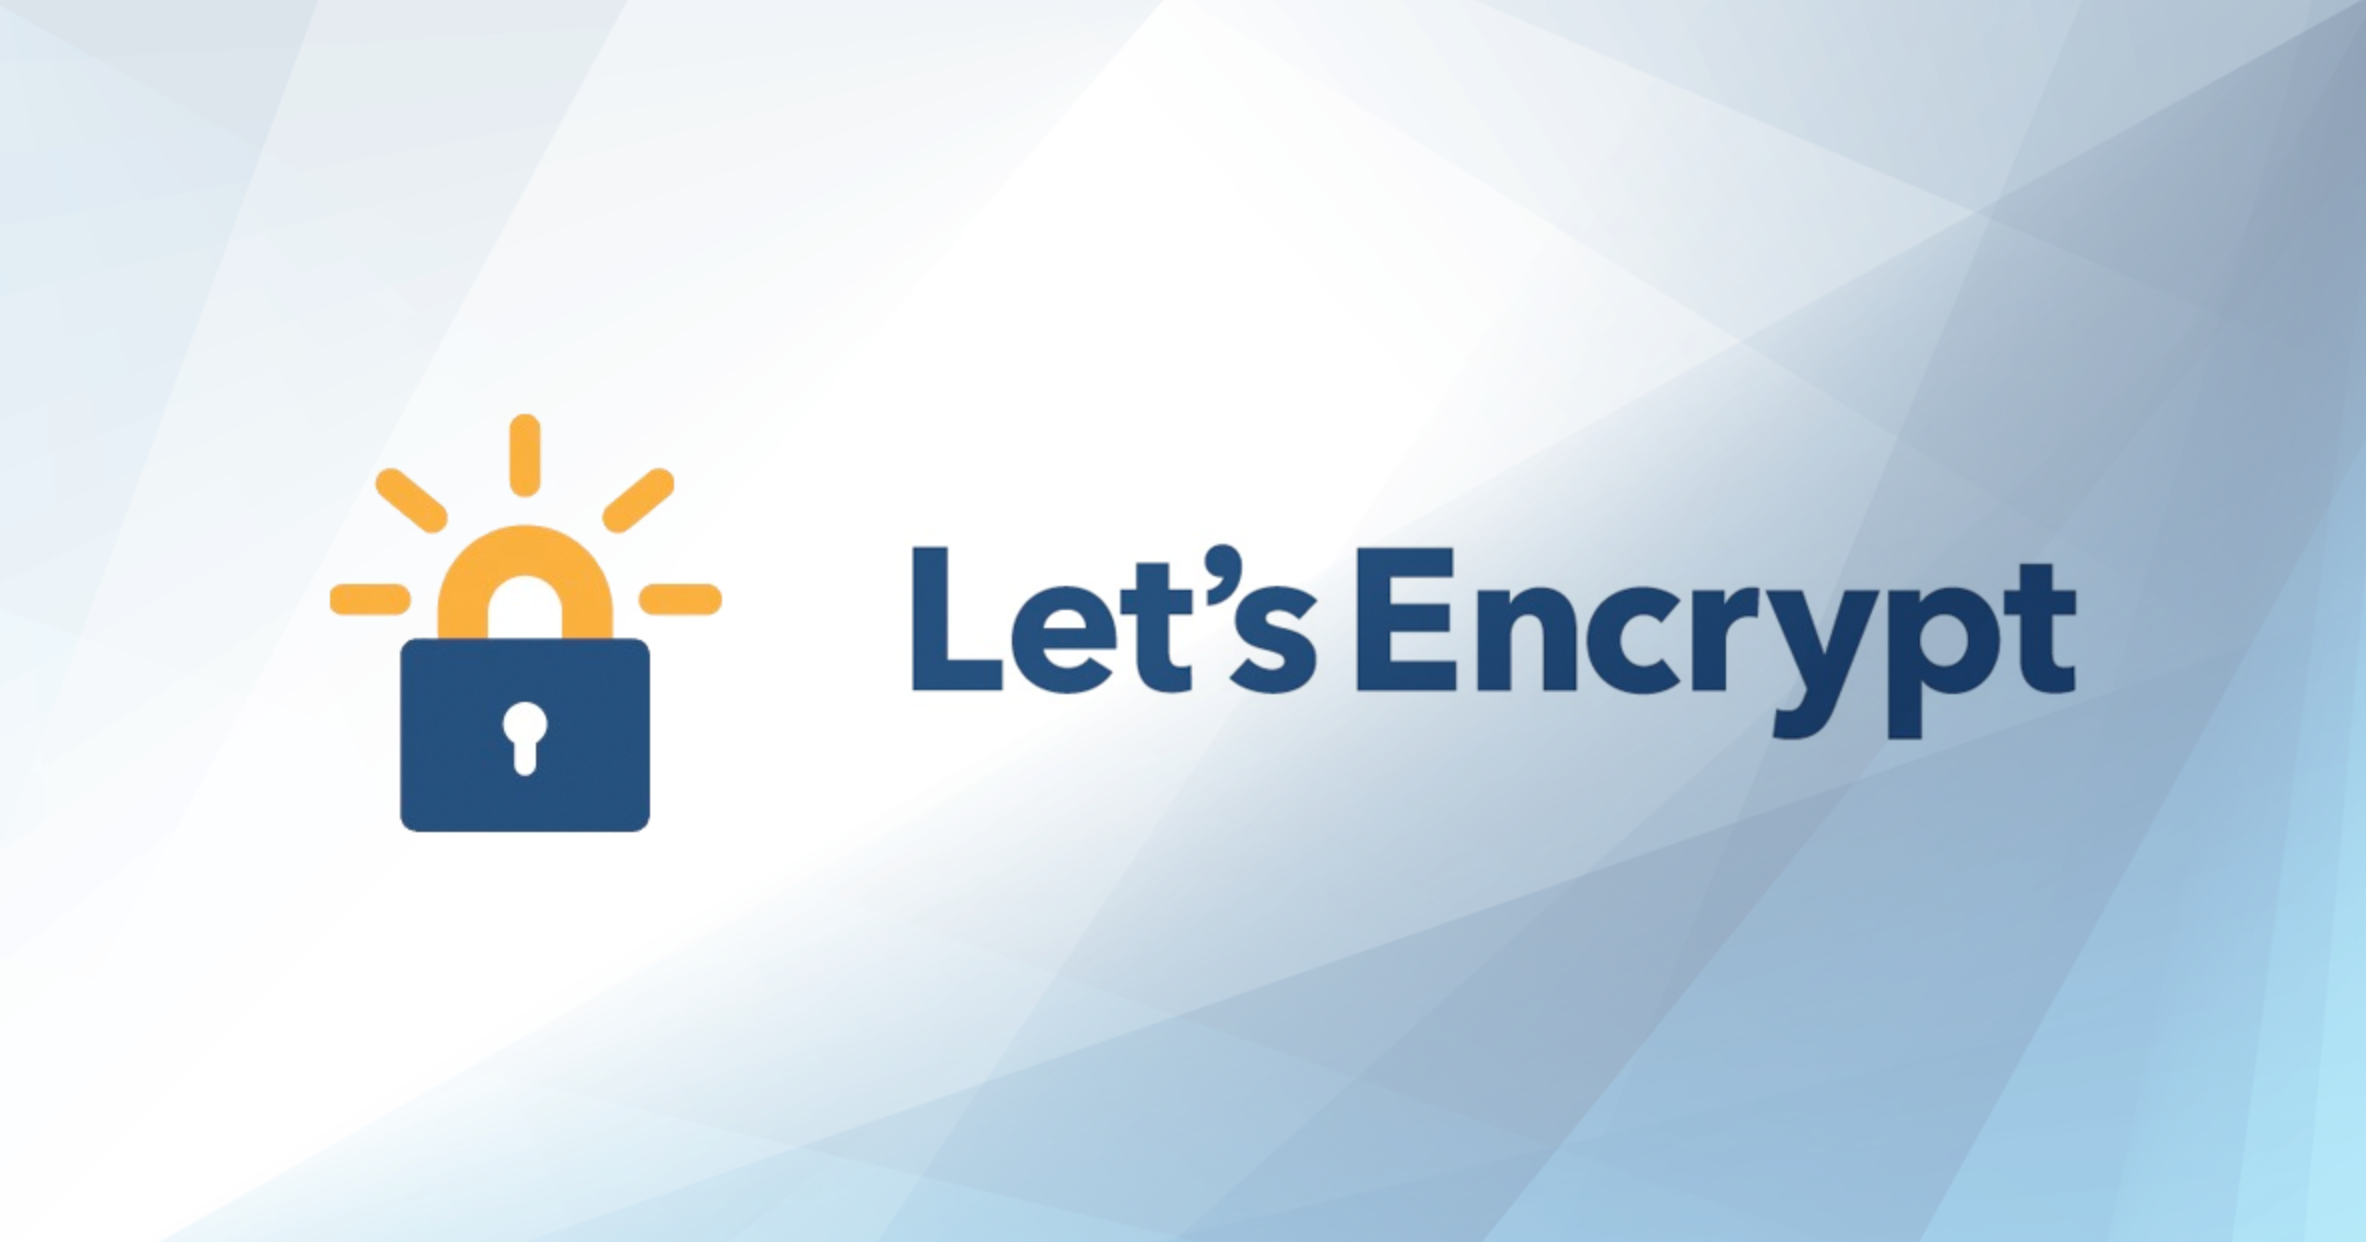 Https letsencrypt org. SSL Let's encrypt. Encrypt logo. Letsencrypt WORDPRESS. Let's encrypt PNG.